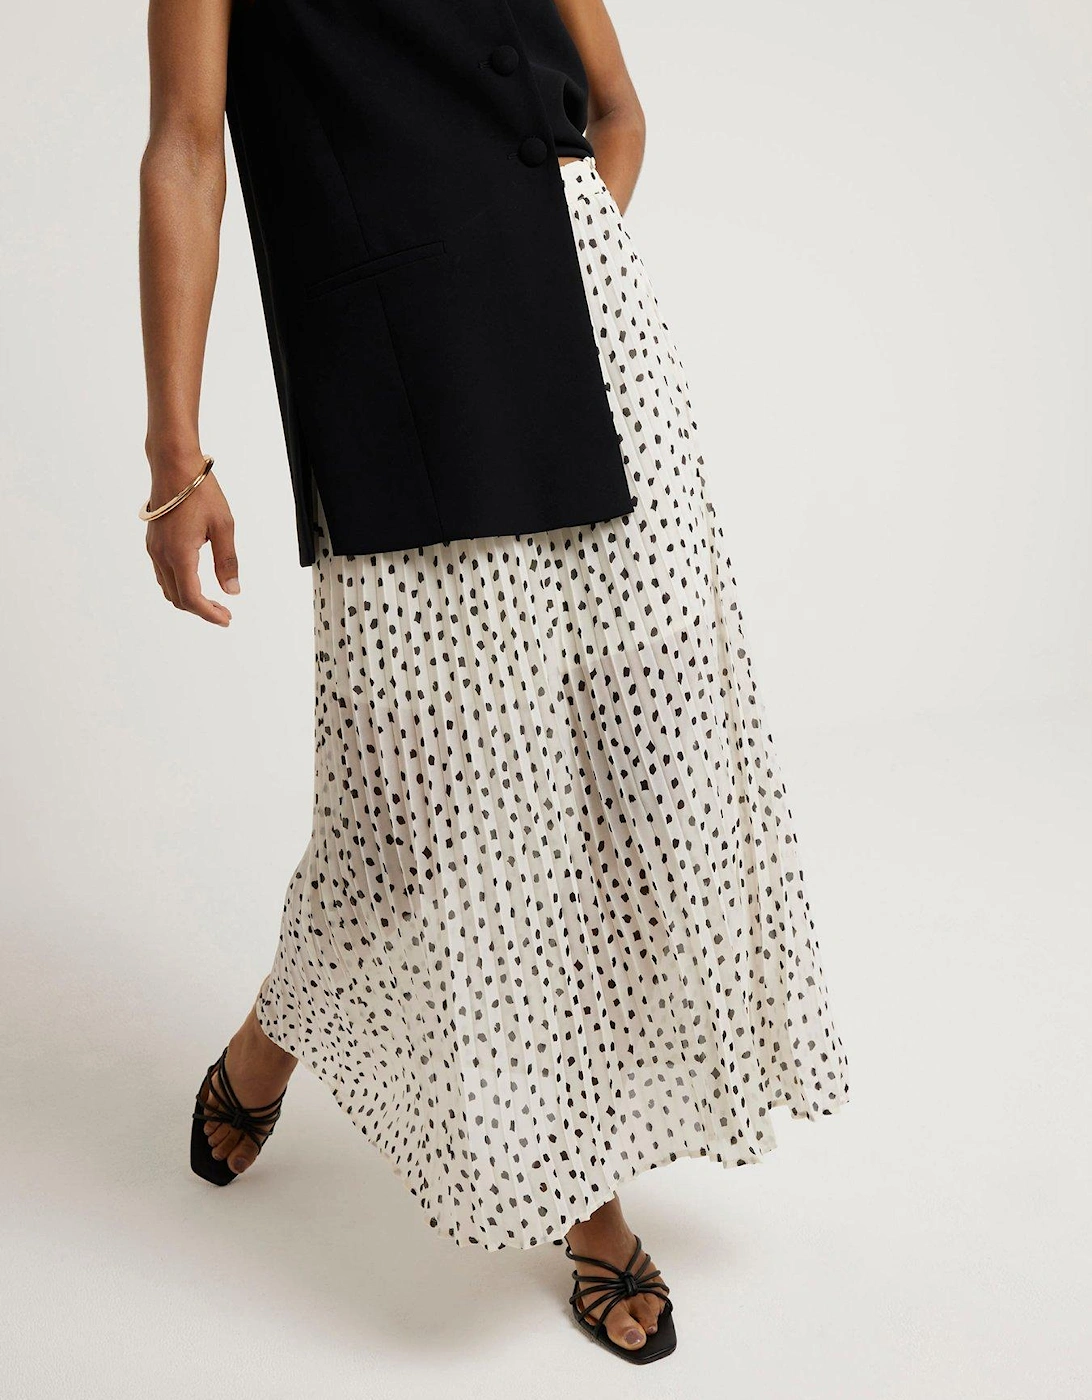 Polka Dot Pleated Skirt - White, 2 of 1